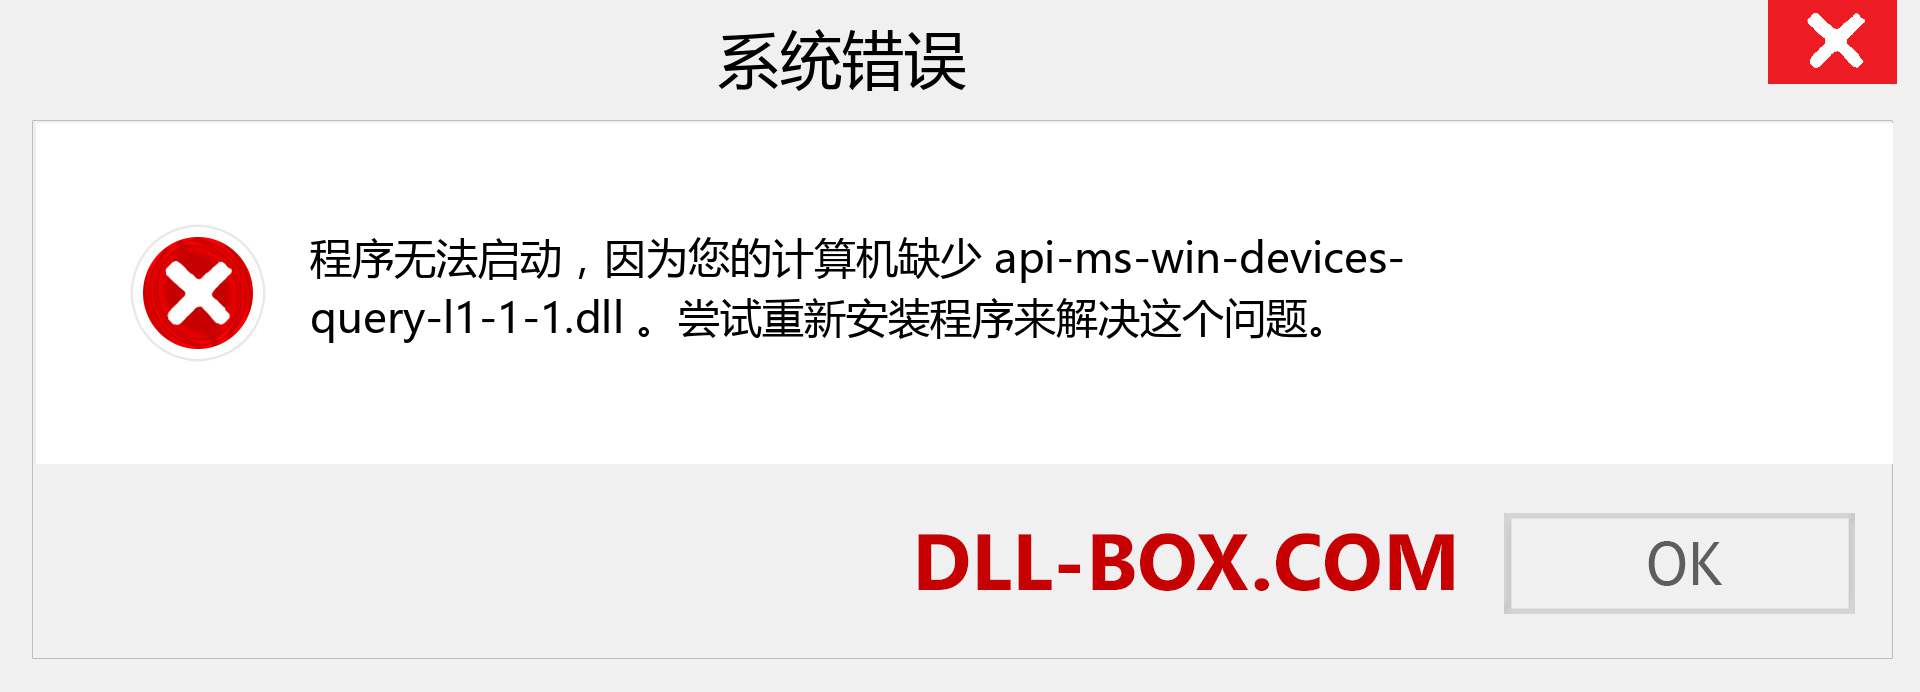 api-ms-win-devices-query-l1-1-1.dll 文件丢失？。 适用于 Windows 7、8、10 的下载 - 修复 Windows、照片、图像上的 api-ms-win-devices-query-l1-1-1 dll 丢失错误